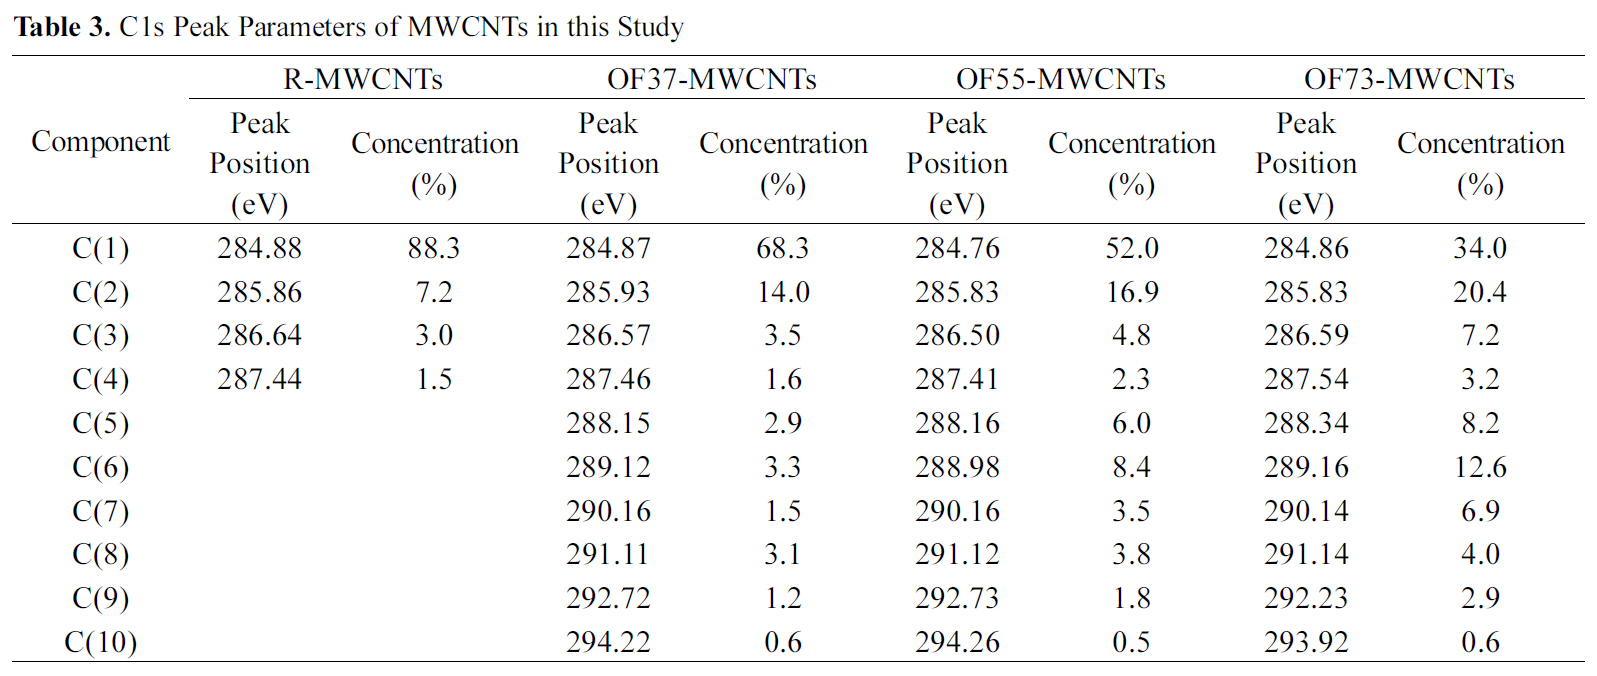 C1s Peak Parameters of MWCNTs in this Study